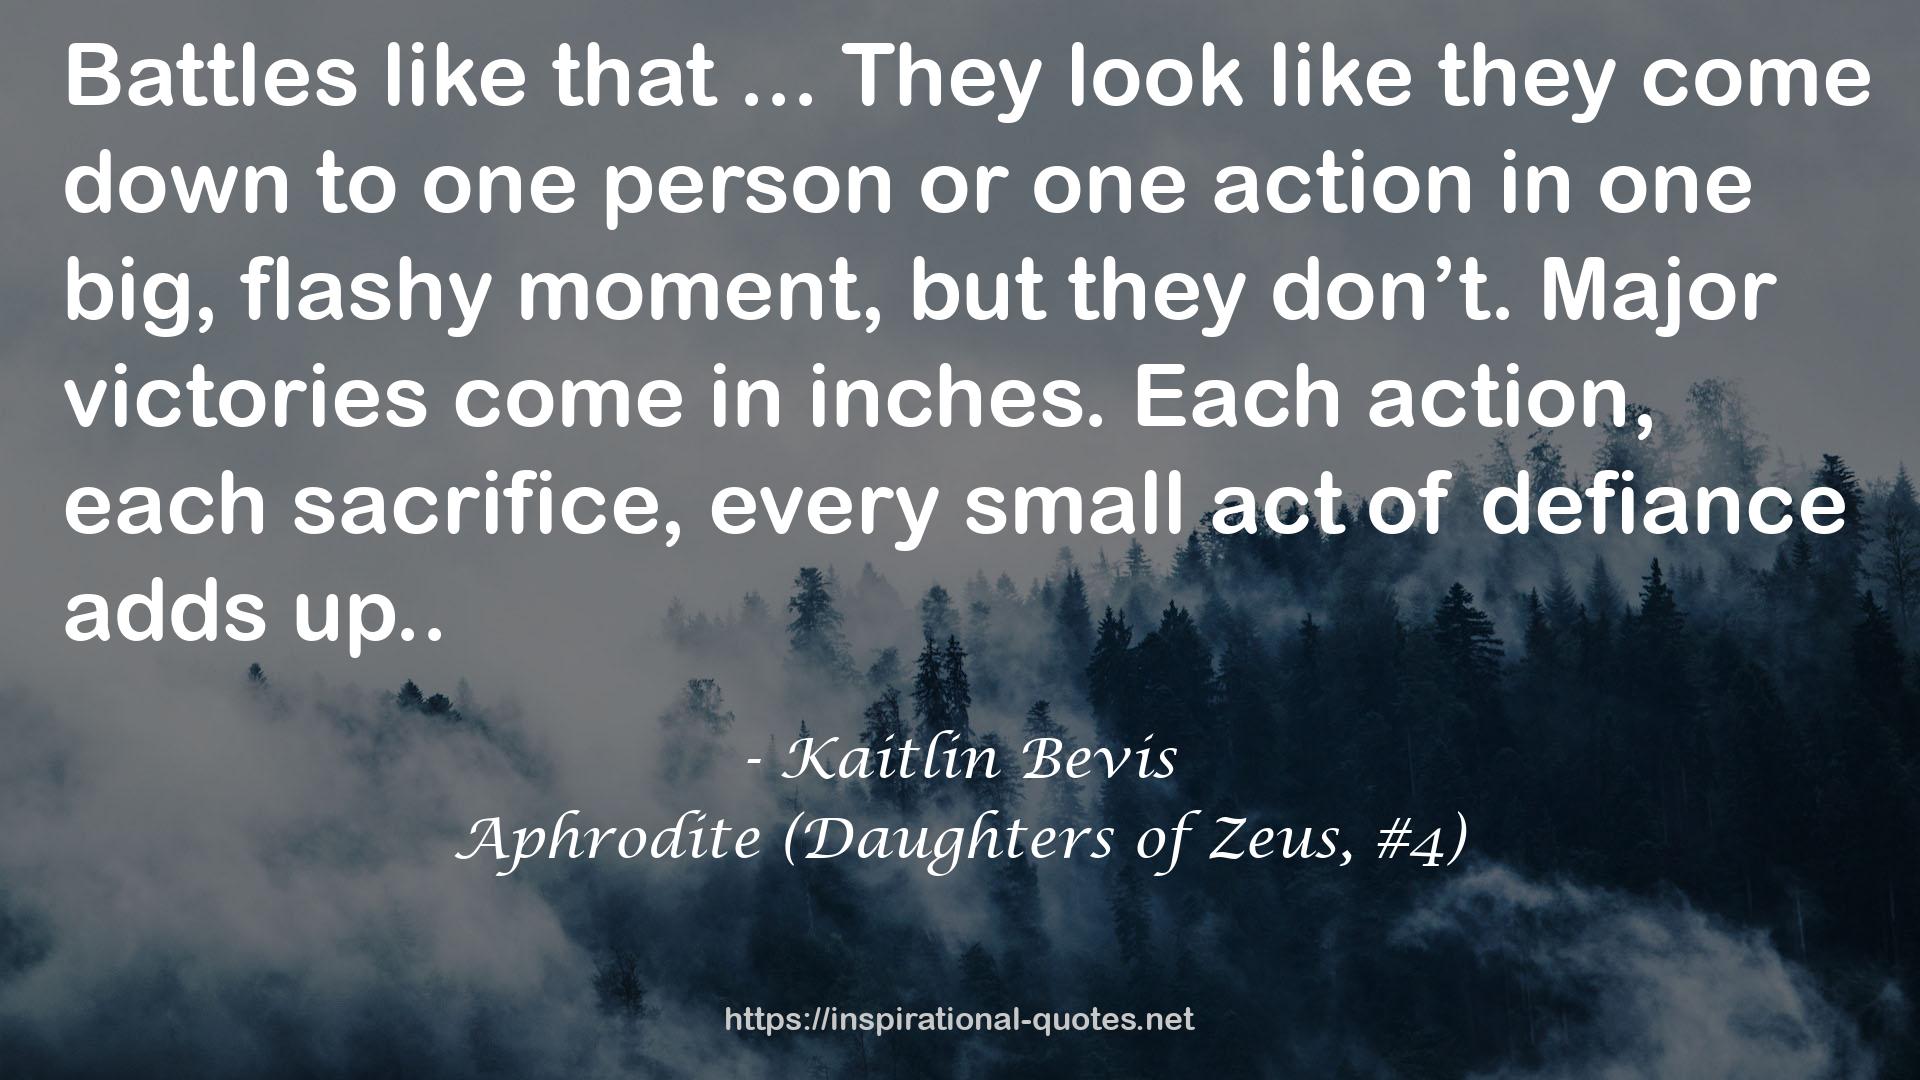 Aphrodite (Daughters of Zeus, #4) QUOTES